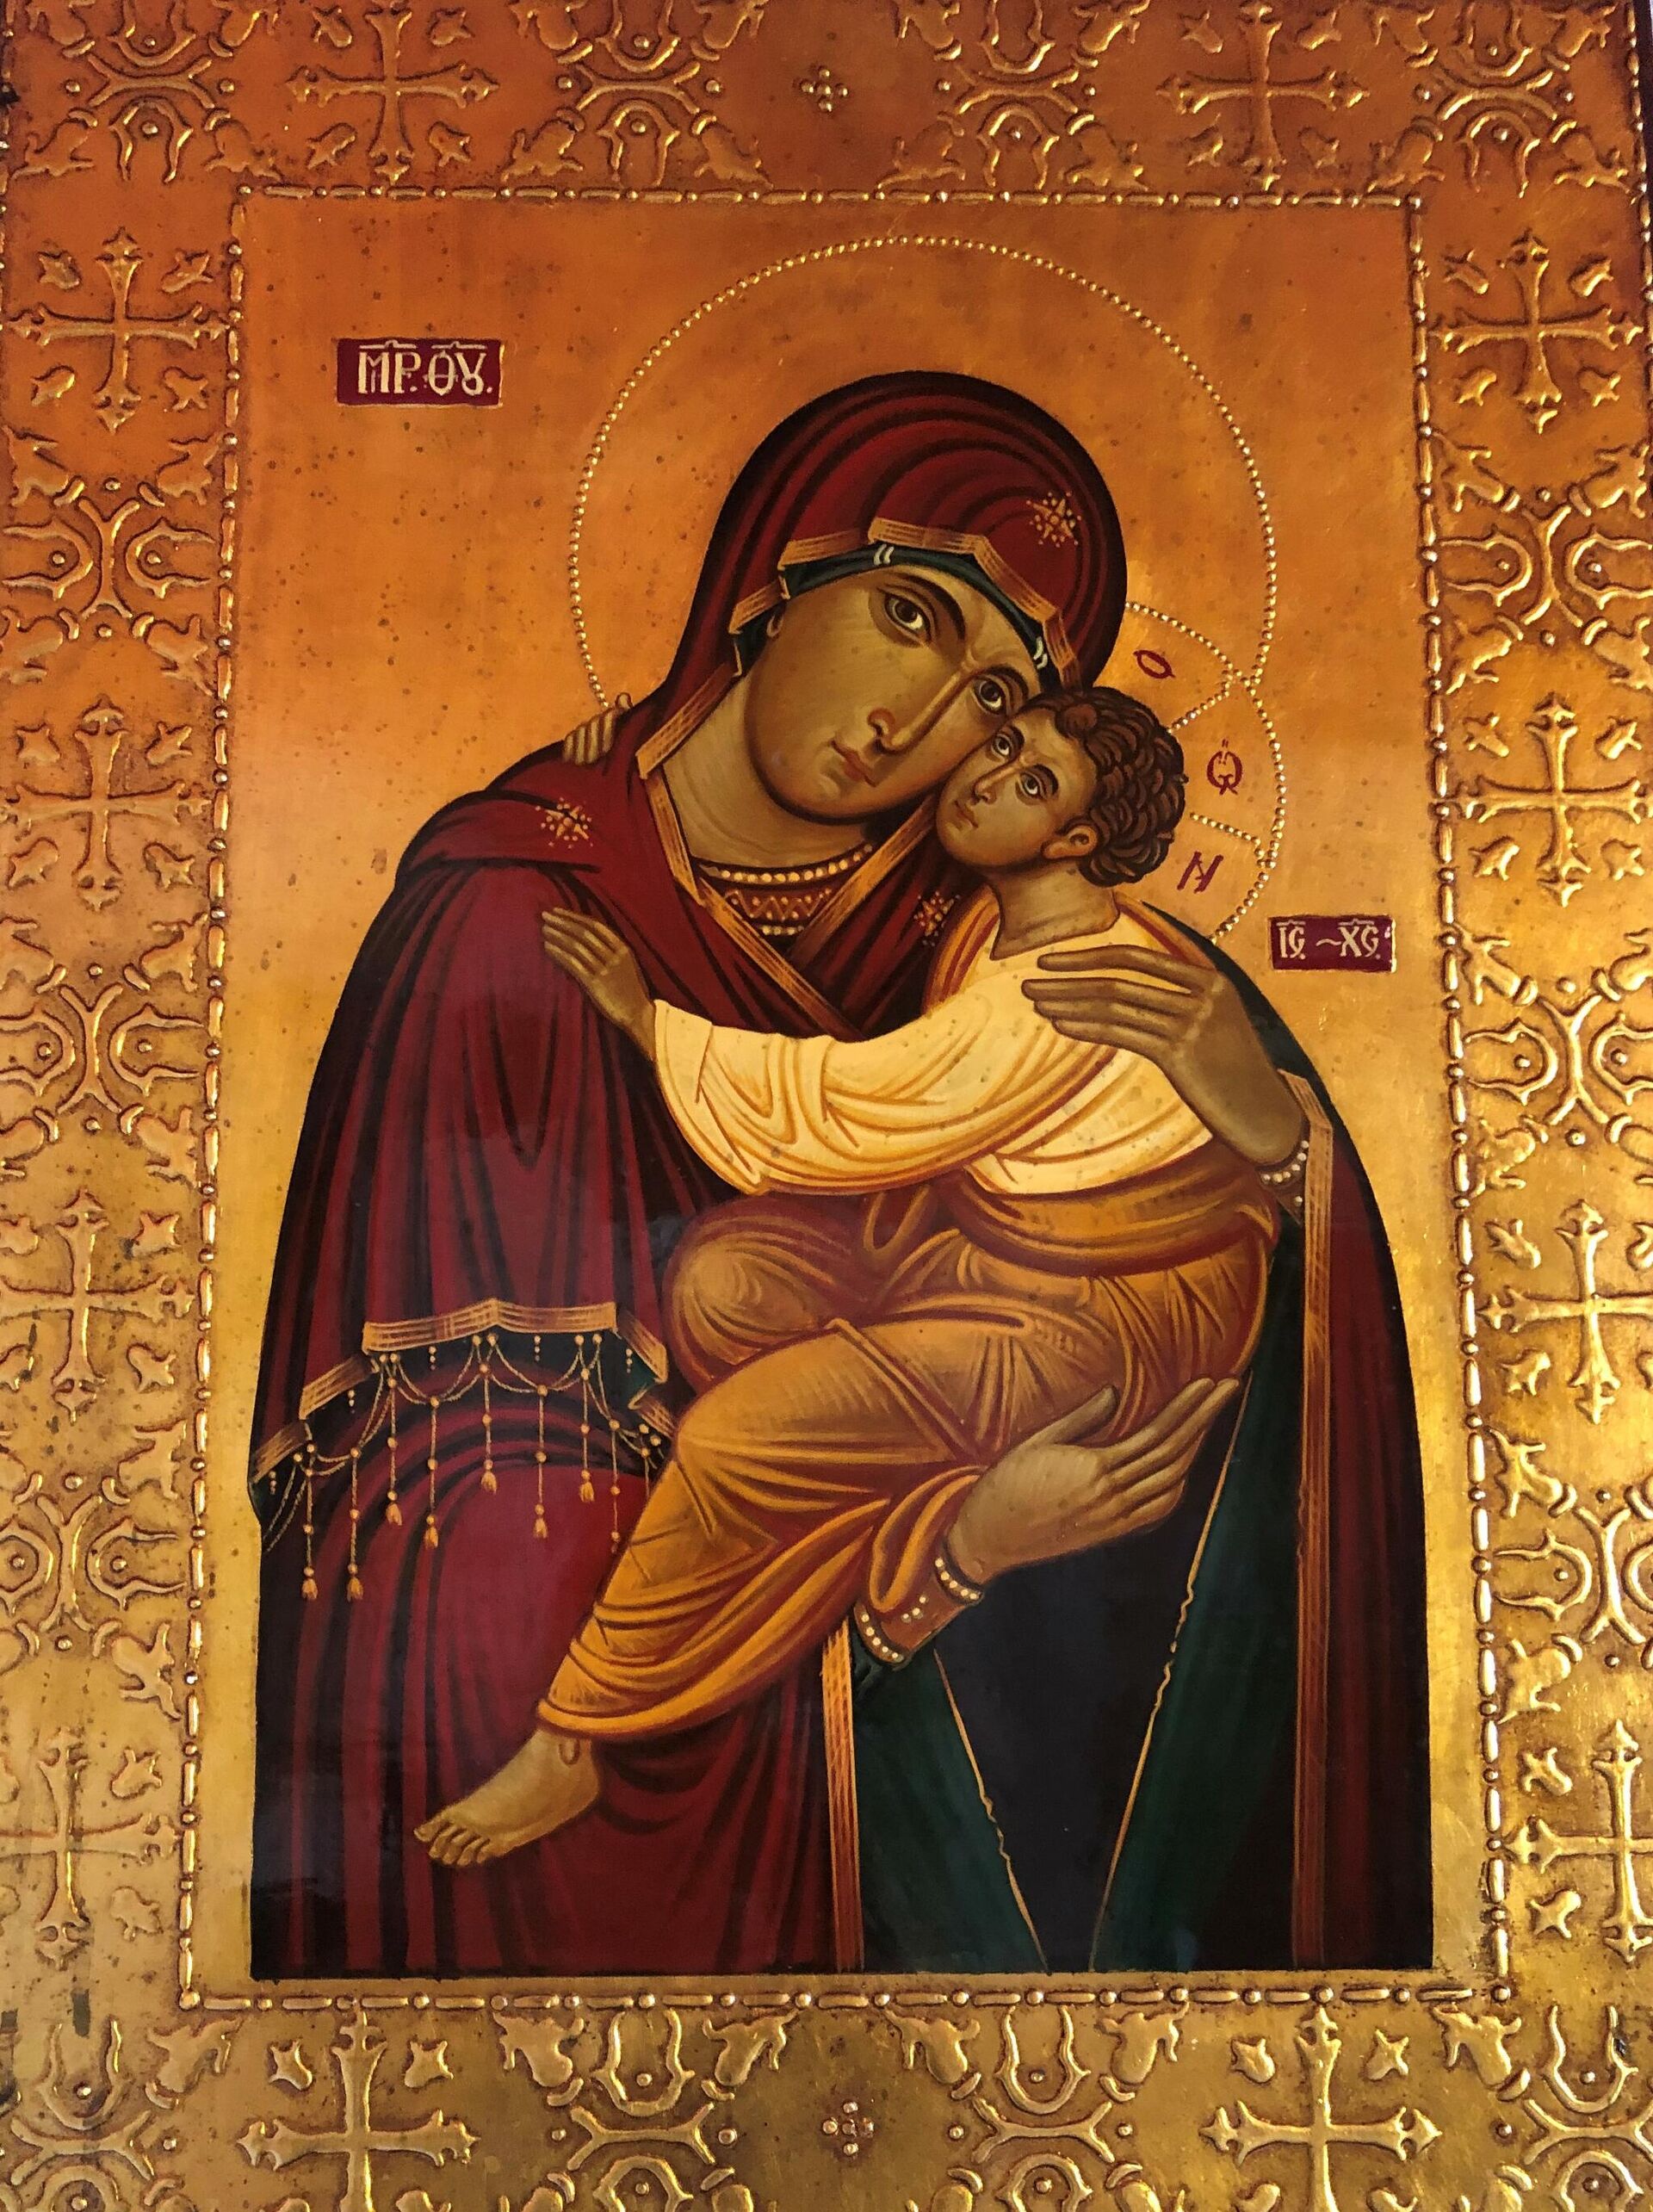 Богородица и Исус Христос. Икона в Греческой церкви в Константинопле. - Sputnik Молдова, 1920, 25.12.2021